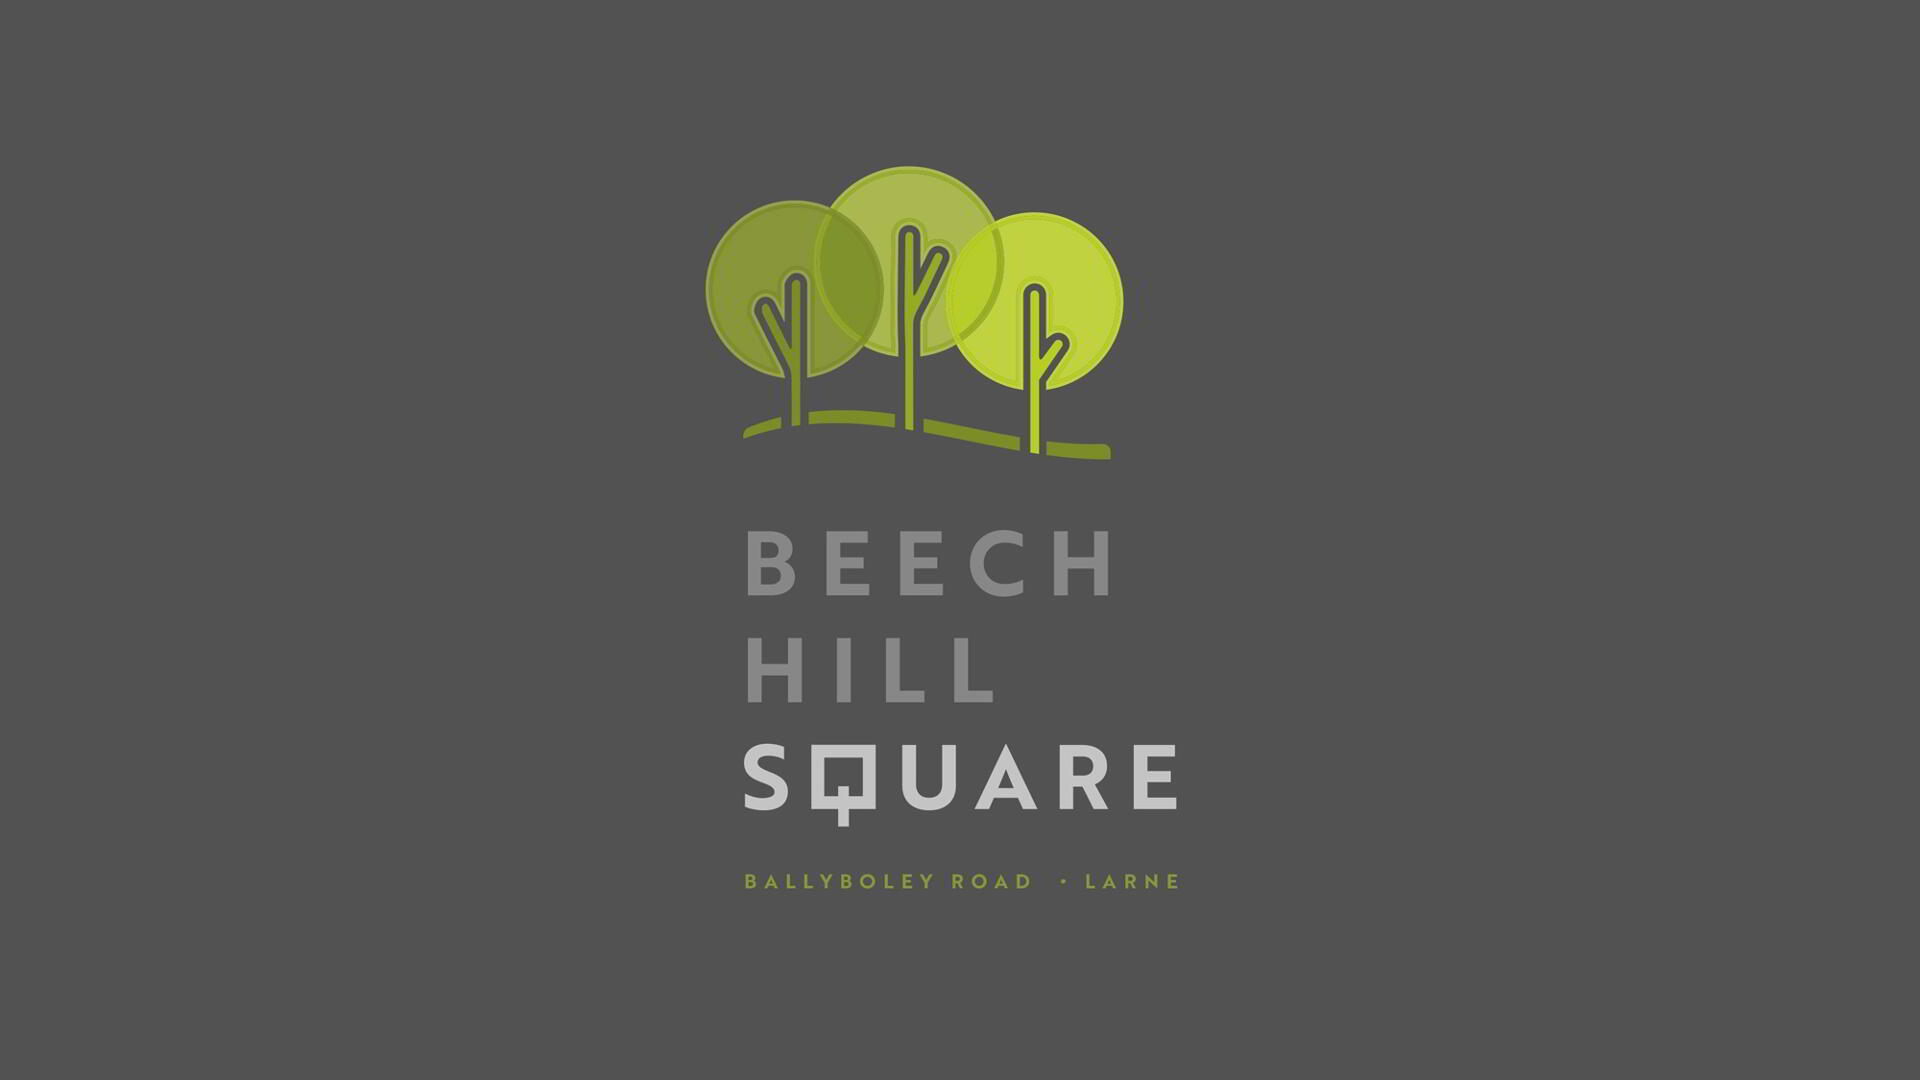 Beech Hill Square, Larne